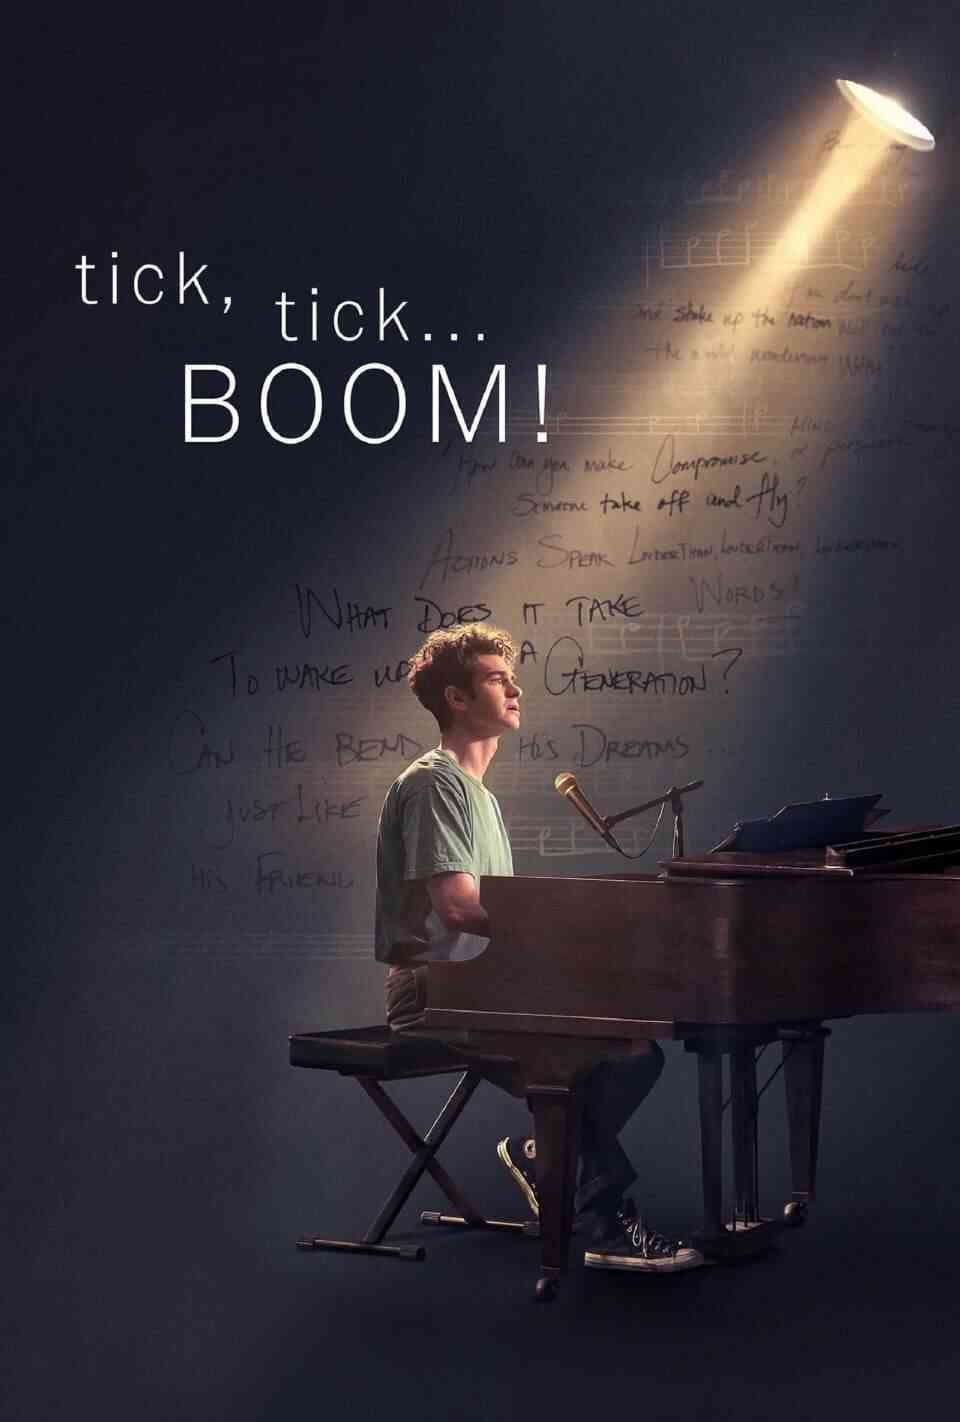 Read tick, tick, BOOM! screenplay (poster)